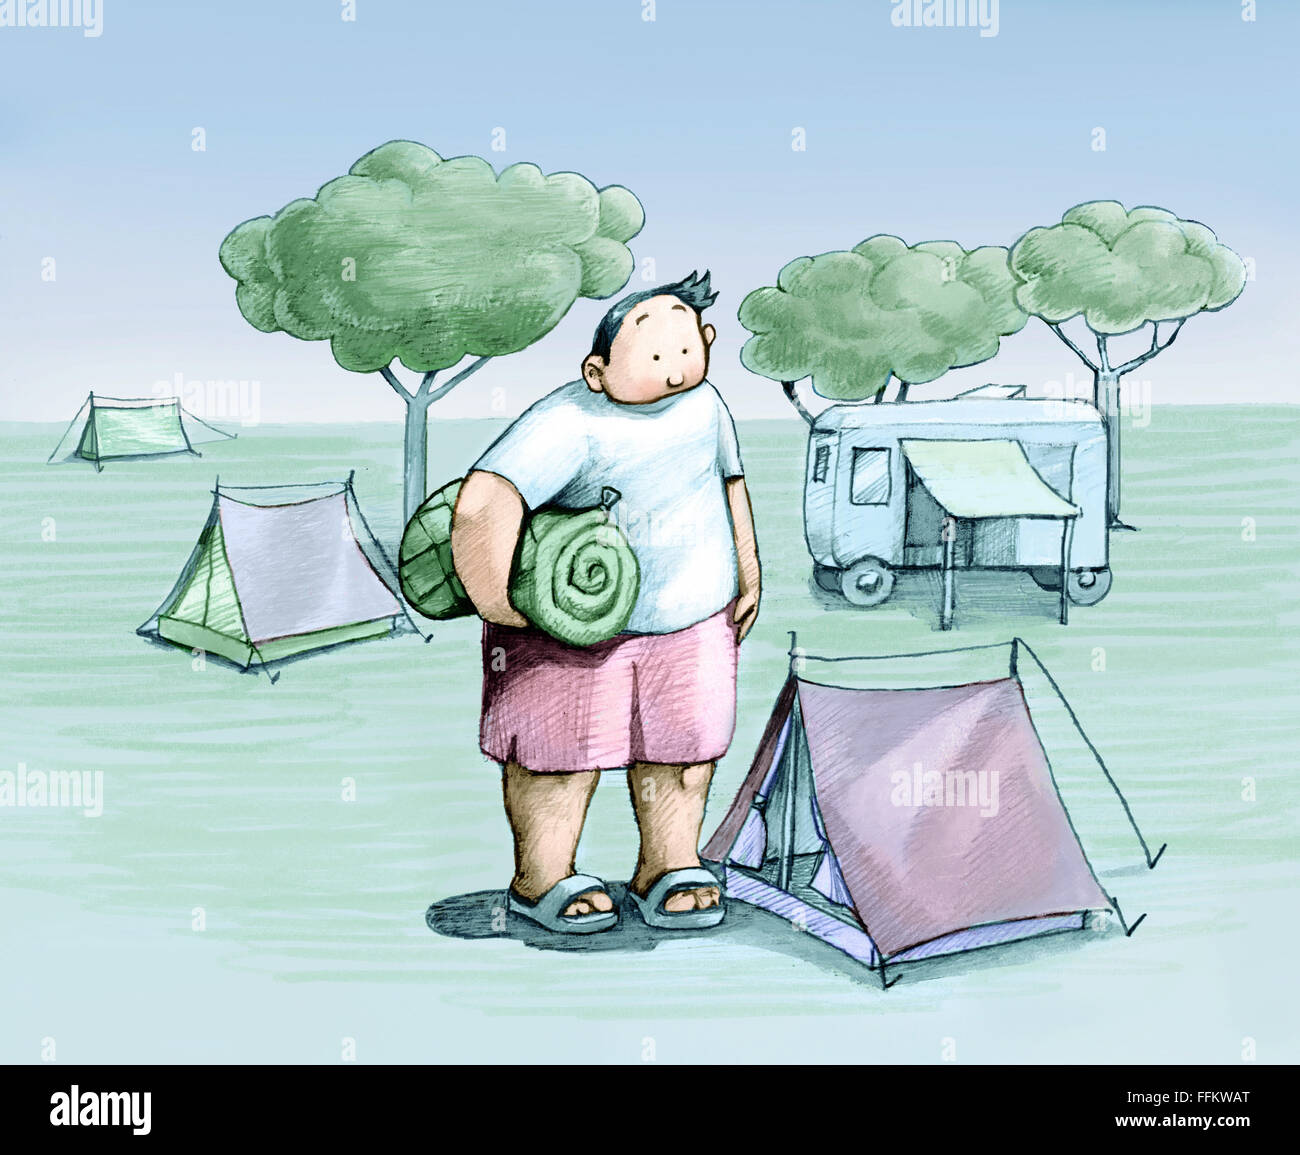 Un garçon joufflu ressemble à une petite tente où il doit dormir Banque D'Images